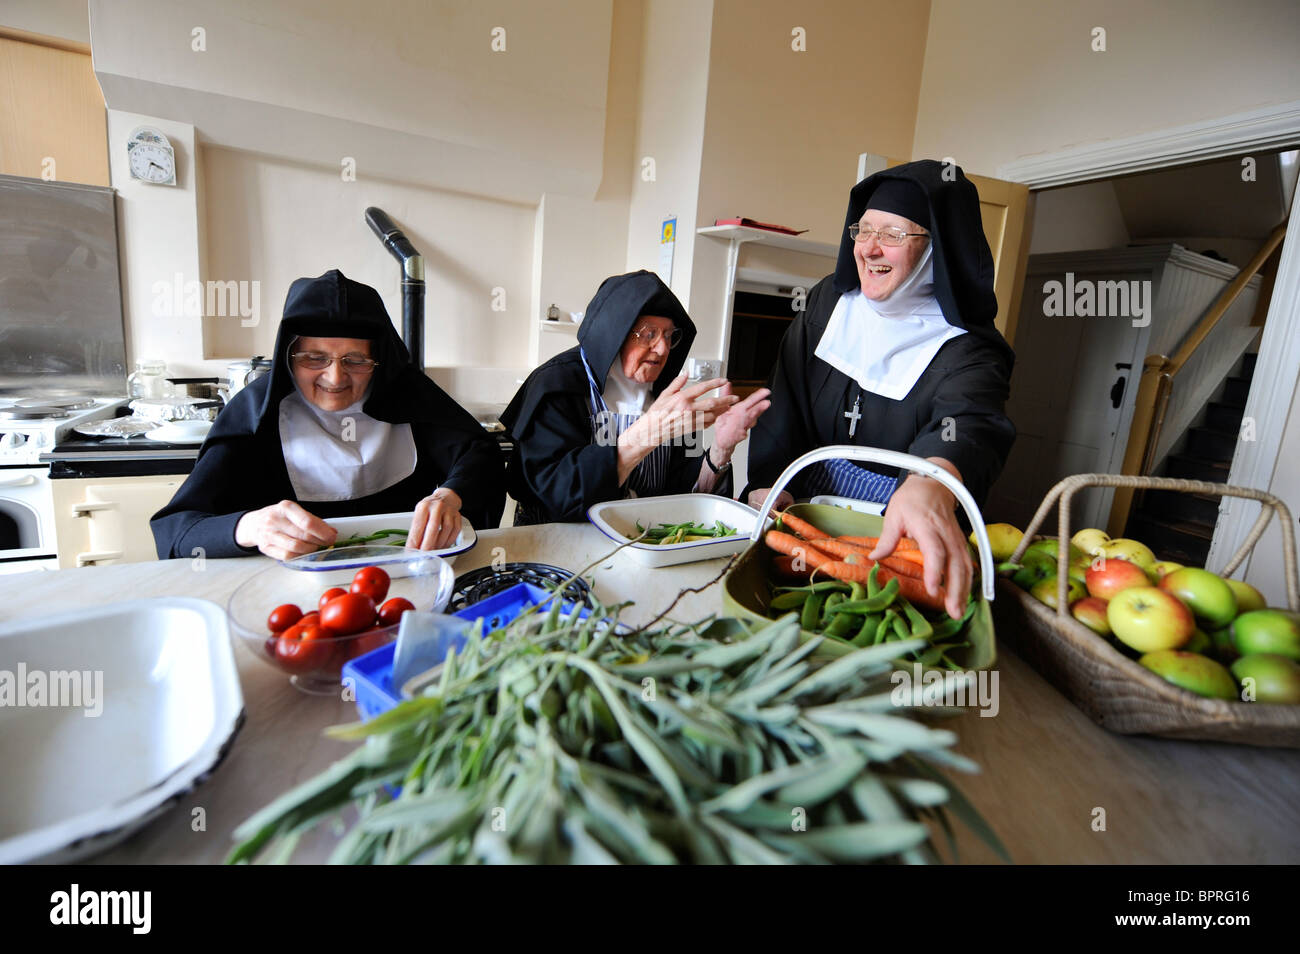 Selbst genügend Schwestern: einen Blick auf das tägliche Leben im Kloster der Heimsuchung in East Sussex. Bild Jim Holden. Stockfoto